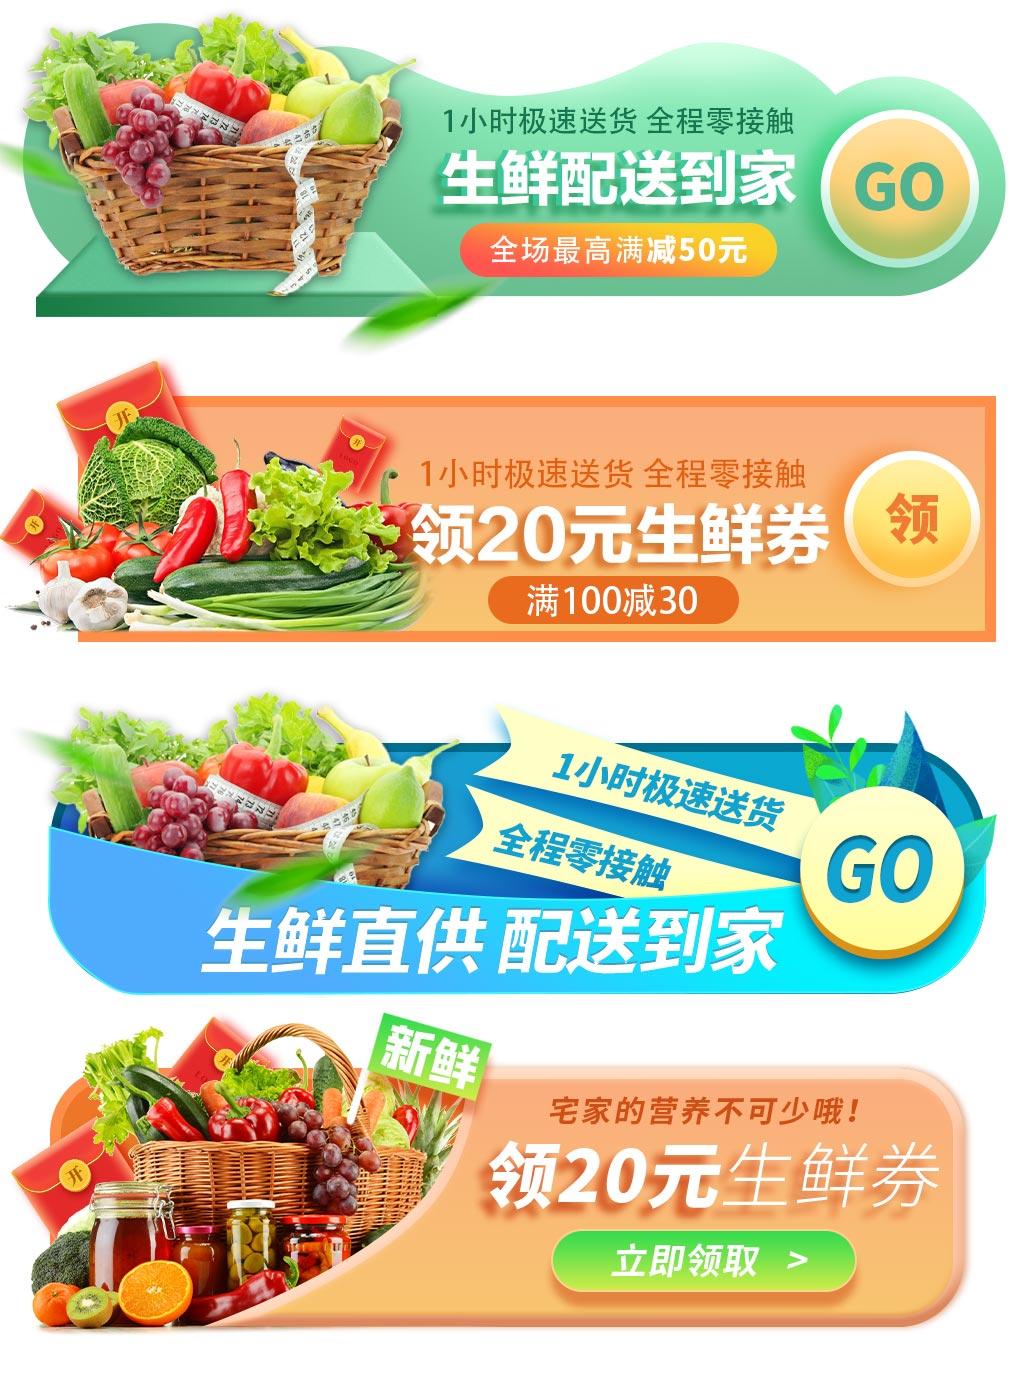 直播蔬果生鲜水果外卖平台APP活动促销入口胶囊图